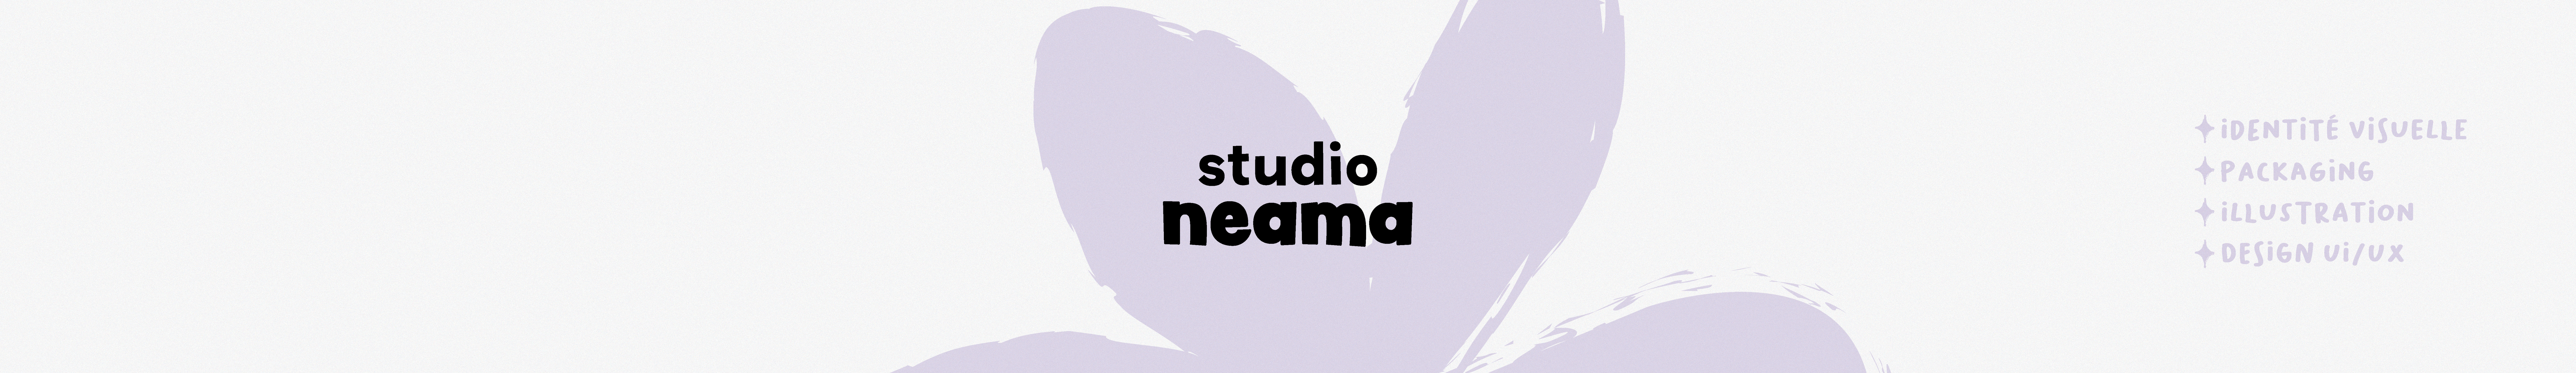 Studio Neama 님의 프로필 배너